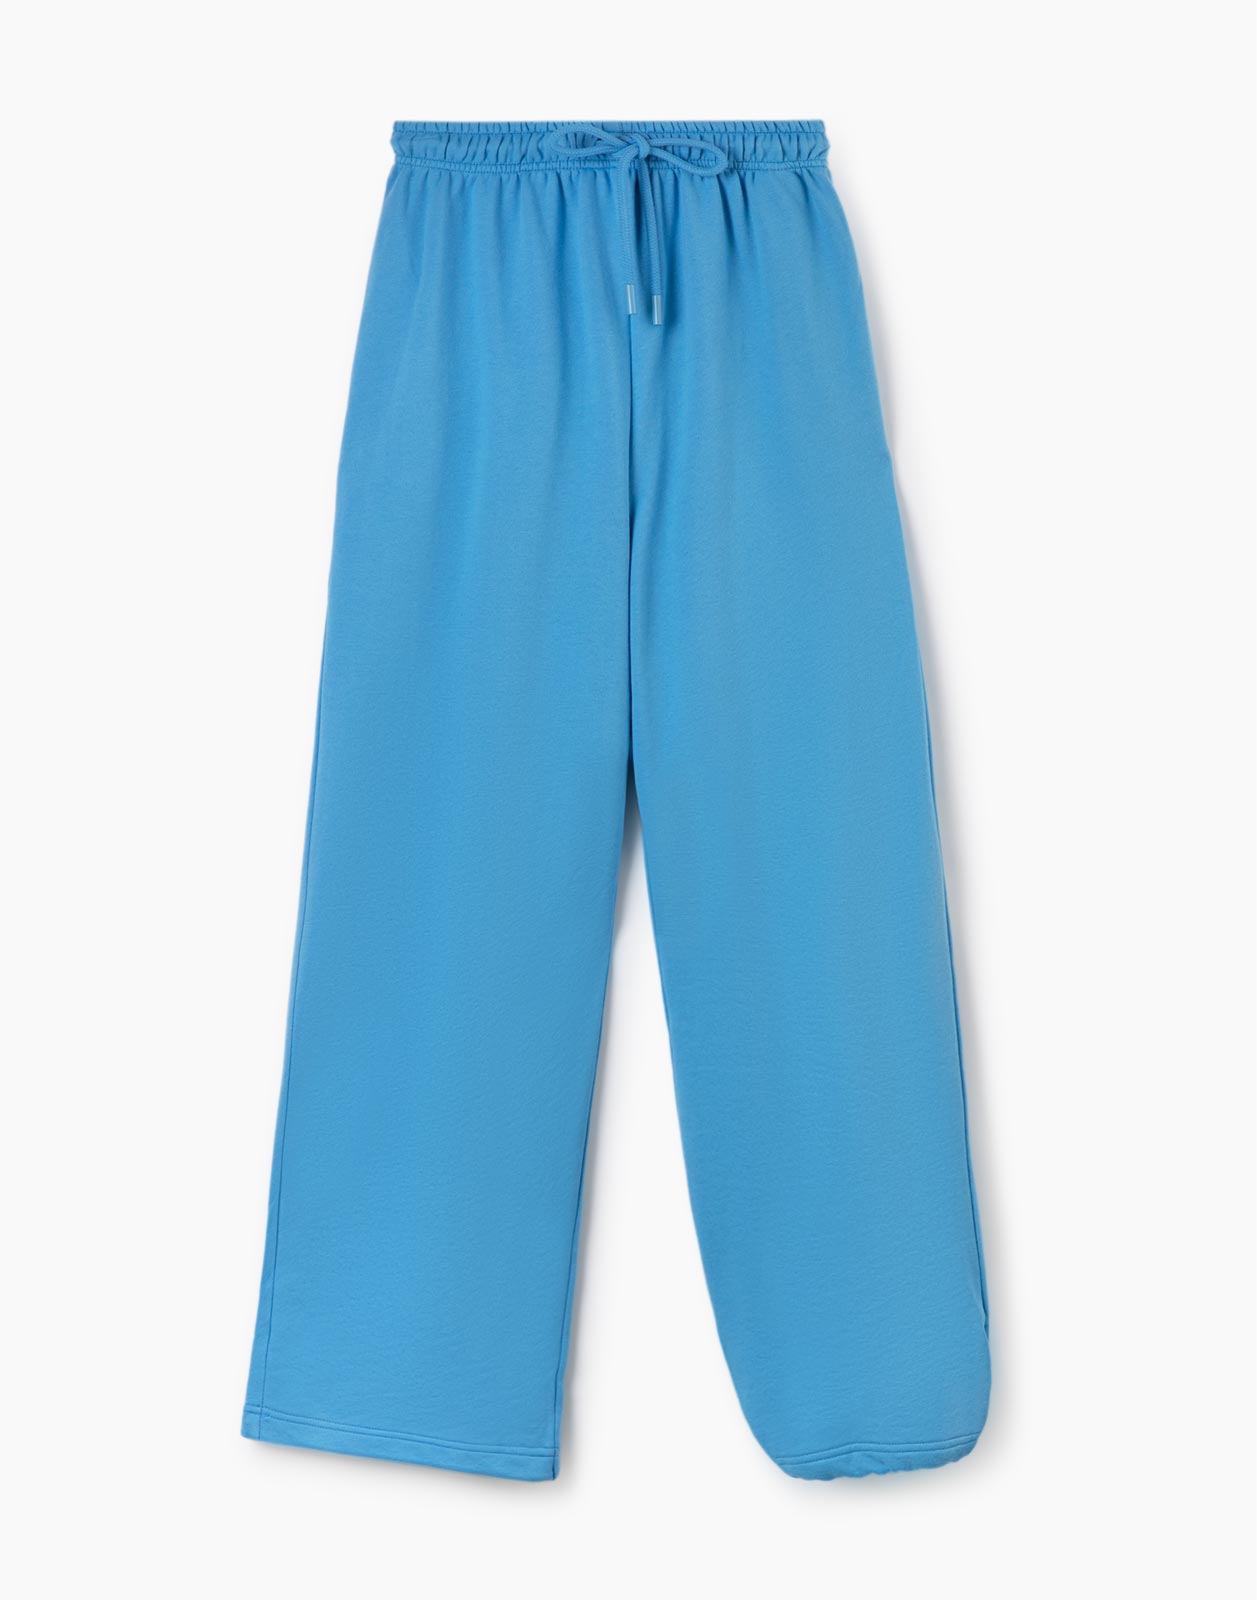 Спортивные брюки женские Gloria Jeans GAC020235 синие XS/164